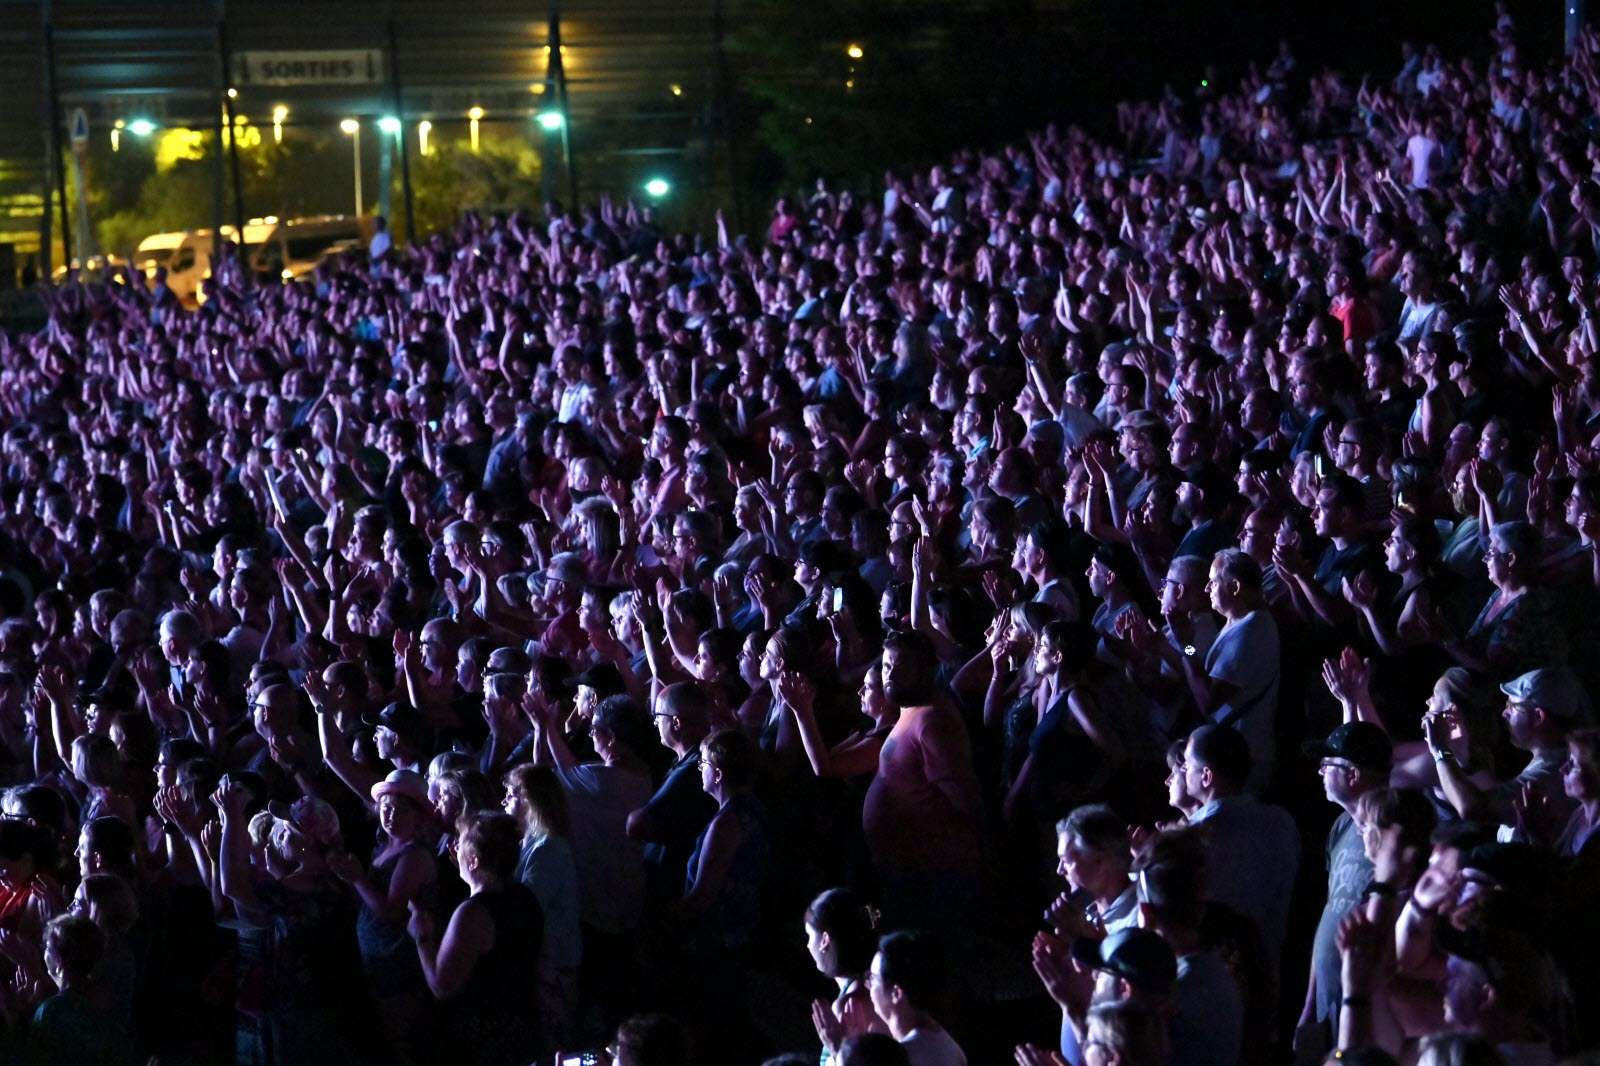 публичный концерт пазл онлайн из фото